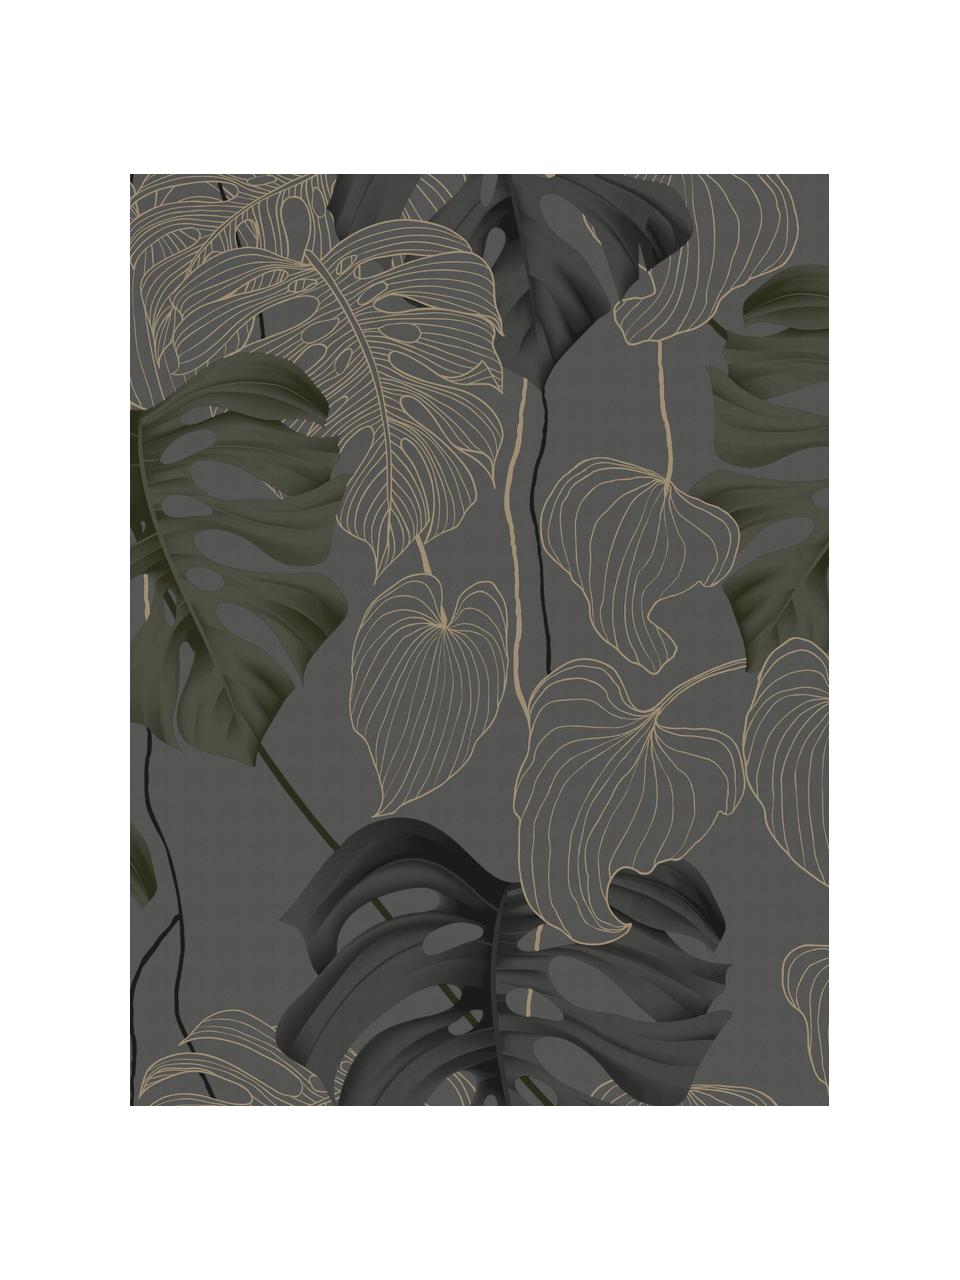 Papier peint Paradiso, Intissé, Gris, noir, vert, brun, larg. 52 x haut. 1005 cm